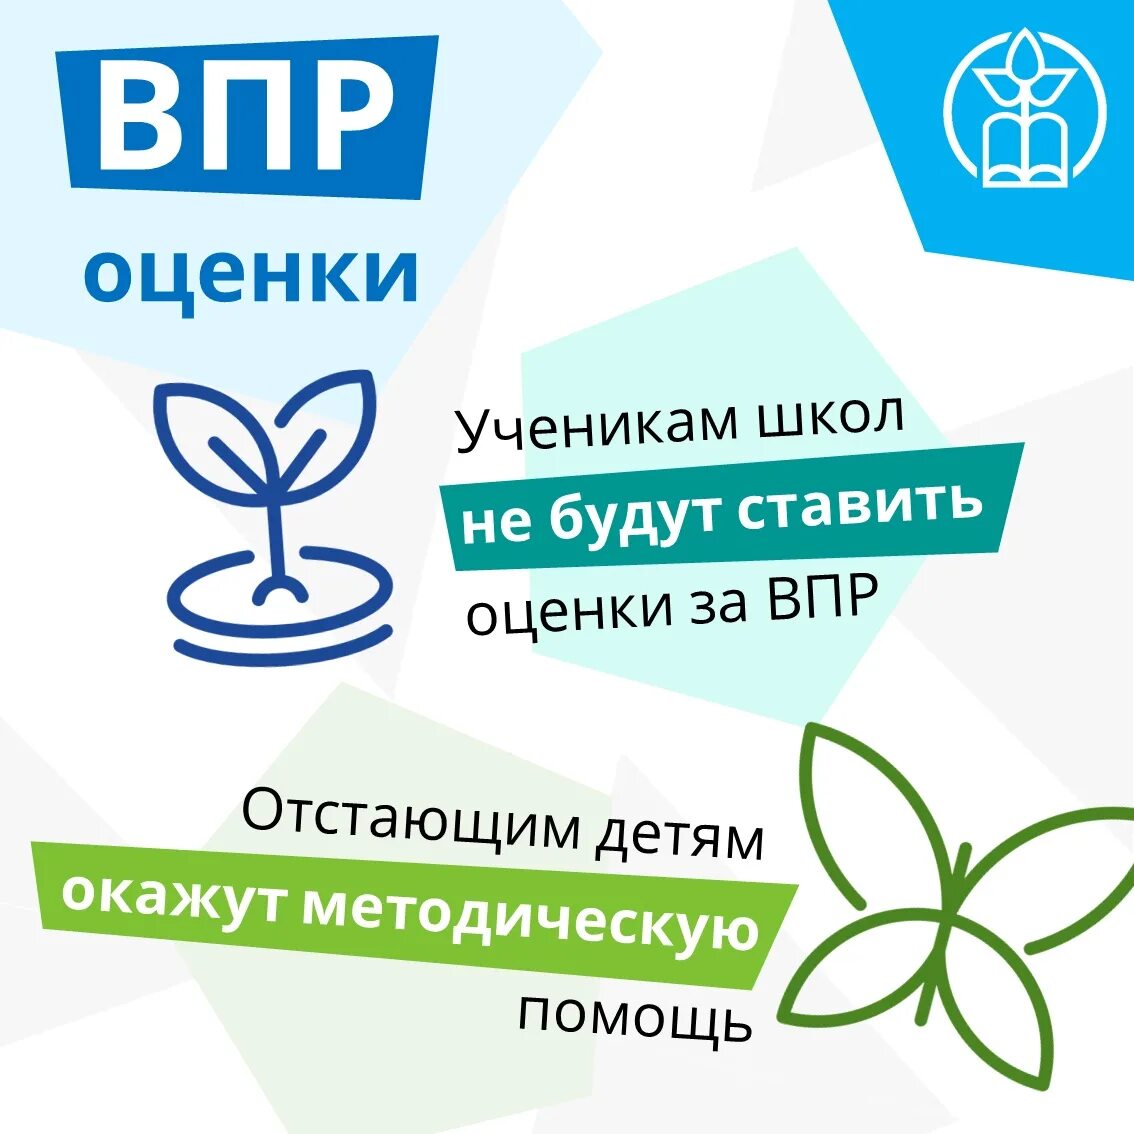 Впр предыдущих лет. ВПР эмблема. Всероссийские проверочные работы. ВПР картинки. ВПР логотип 2021.